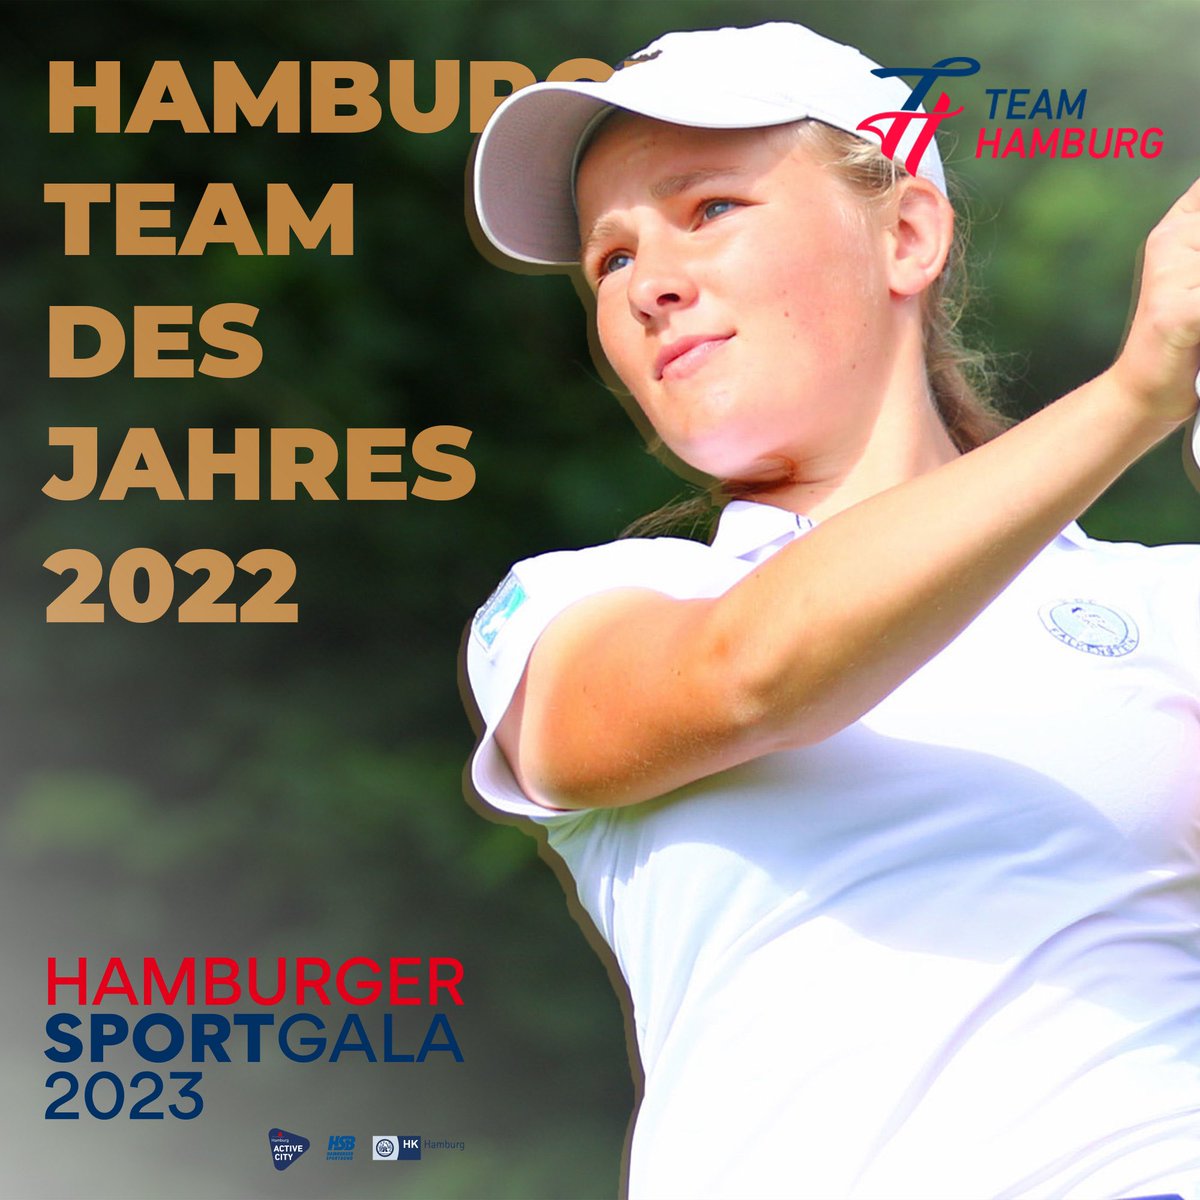 Die Damen- und Herren-Teams des Golf-Club Falkenstein sind das Hamburger Team des Jahres 2022!

Die Teams um #TEAMHAMBURG Athletin Emilie von Finckenstein konnten 2022 bei den Damen und den Herren die Meisterschaft gewinnen.

#hamburgersportgala #sportgala2023

Foto: DGV/stebl